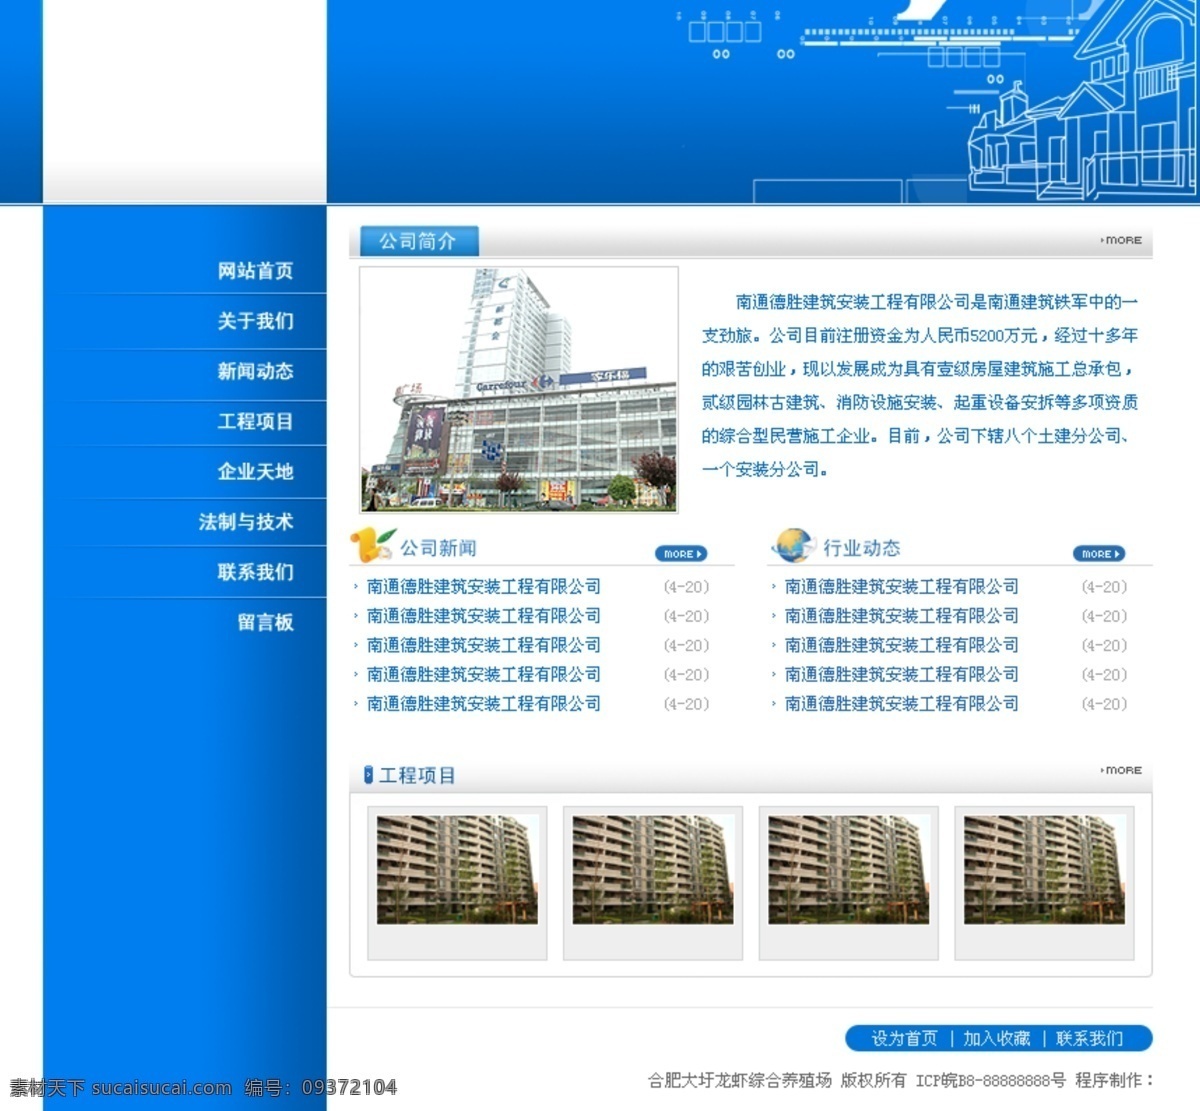 蓝色 建筑 公司 网页模板 蓝色建筑公司 建筑网页素材 网页素材